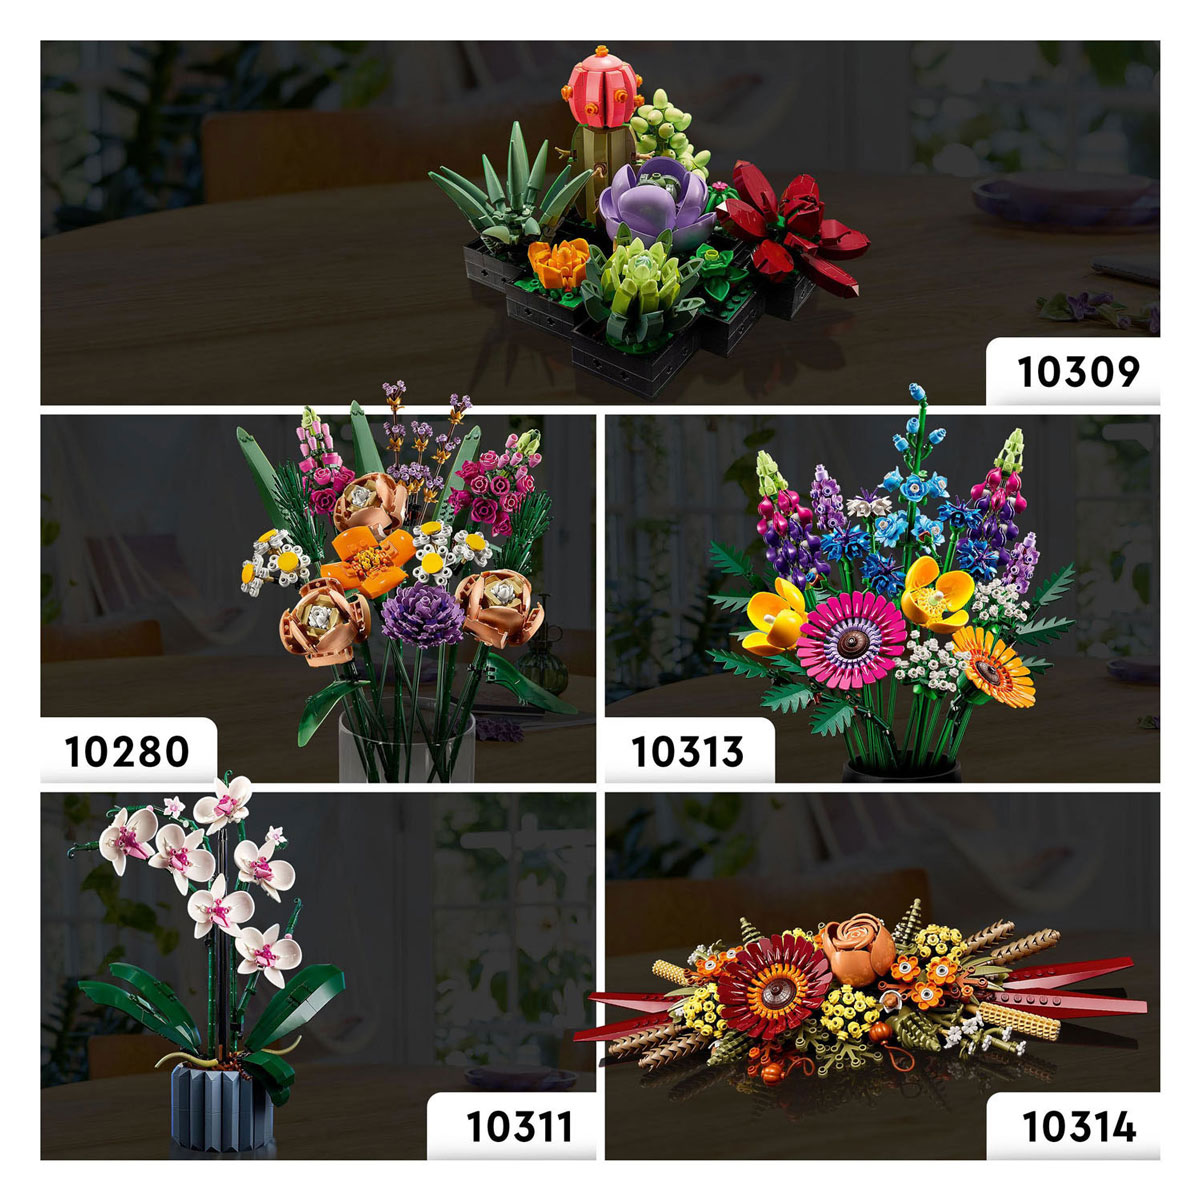 LEGO ICONS 10314 Blumenarrangement mit Trockenblumen